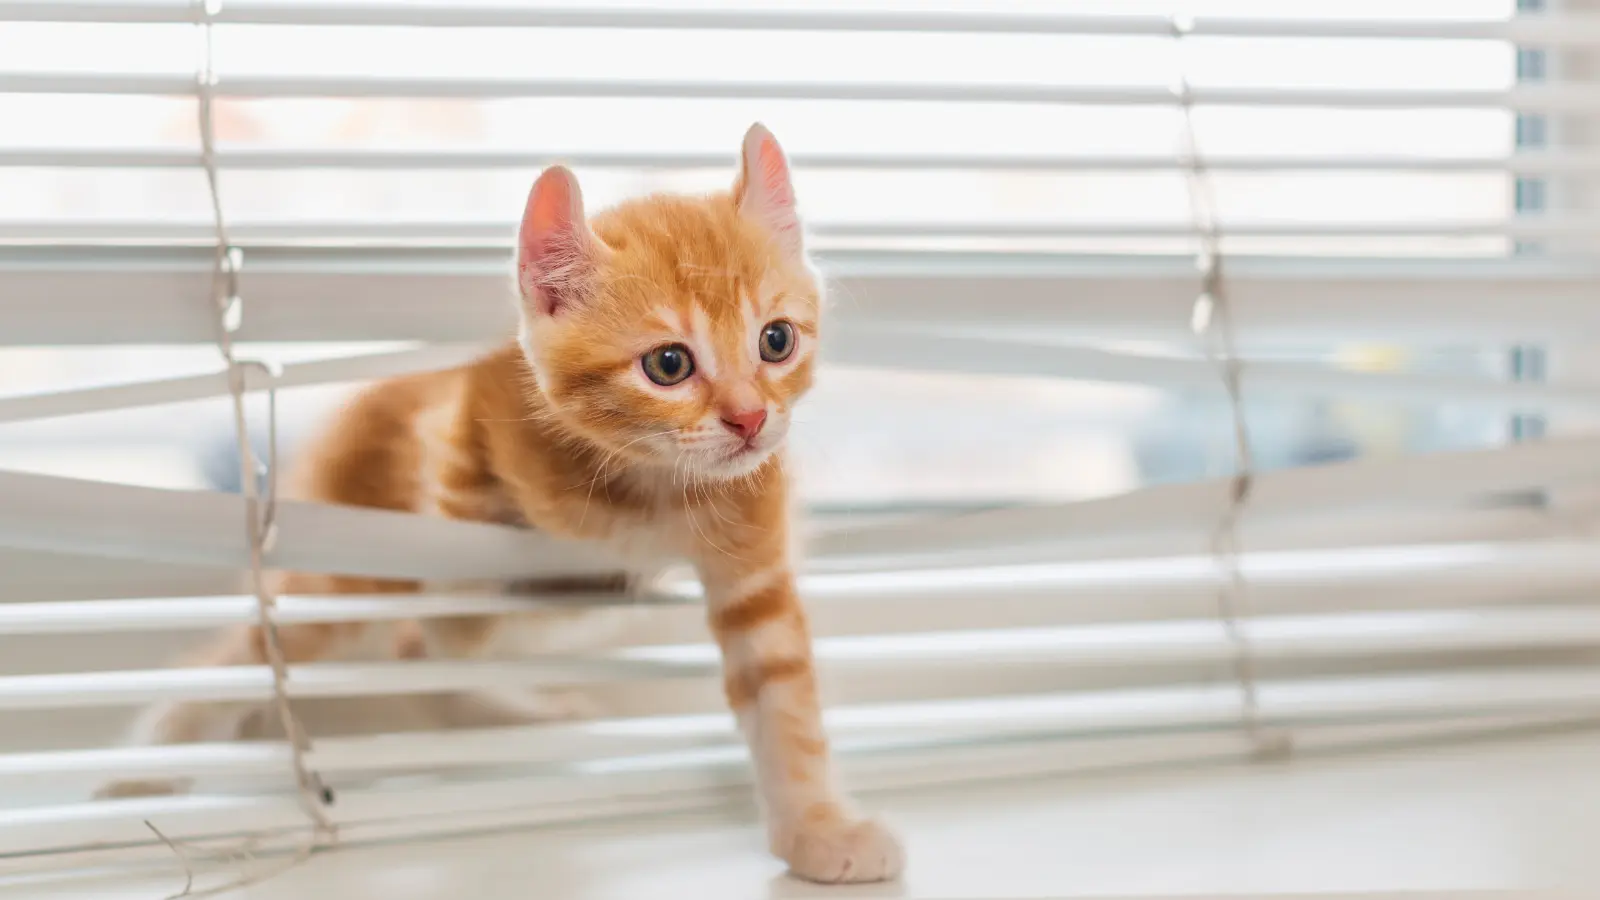 A kitten is stuck in vertical blinds.